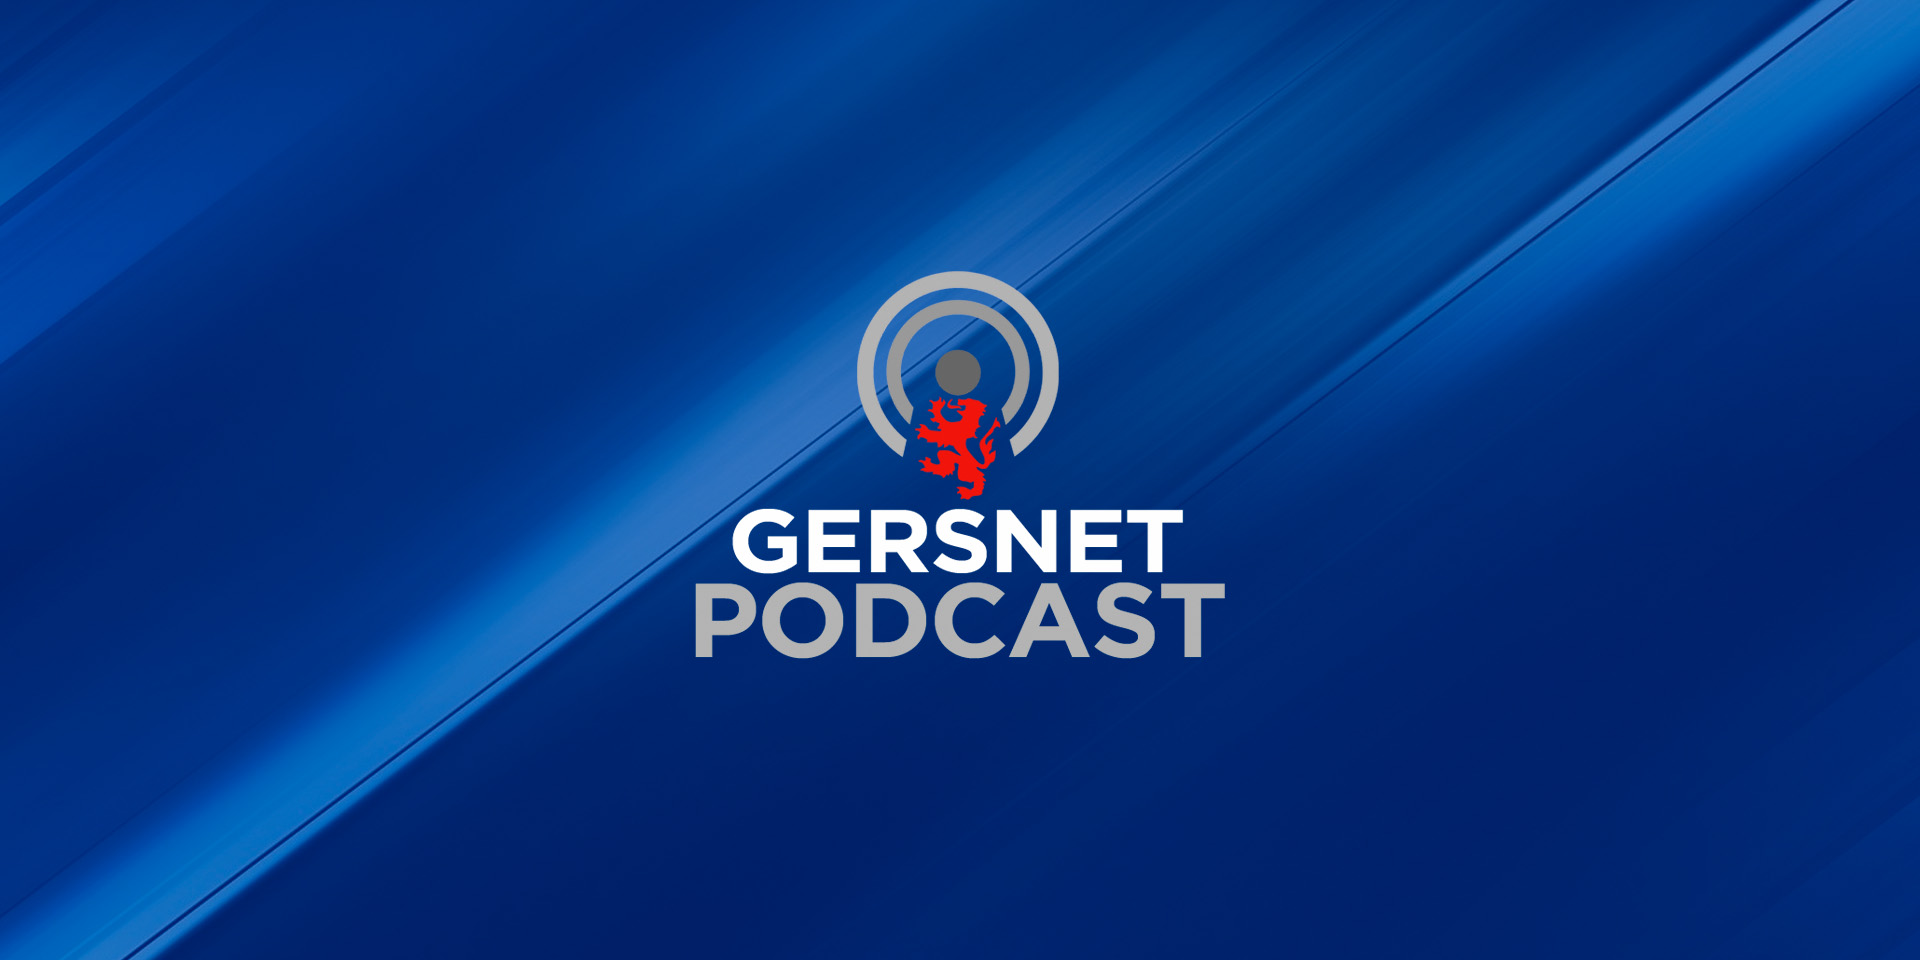 Gersnet Podcast 211 - Aberdeen Preview